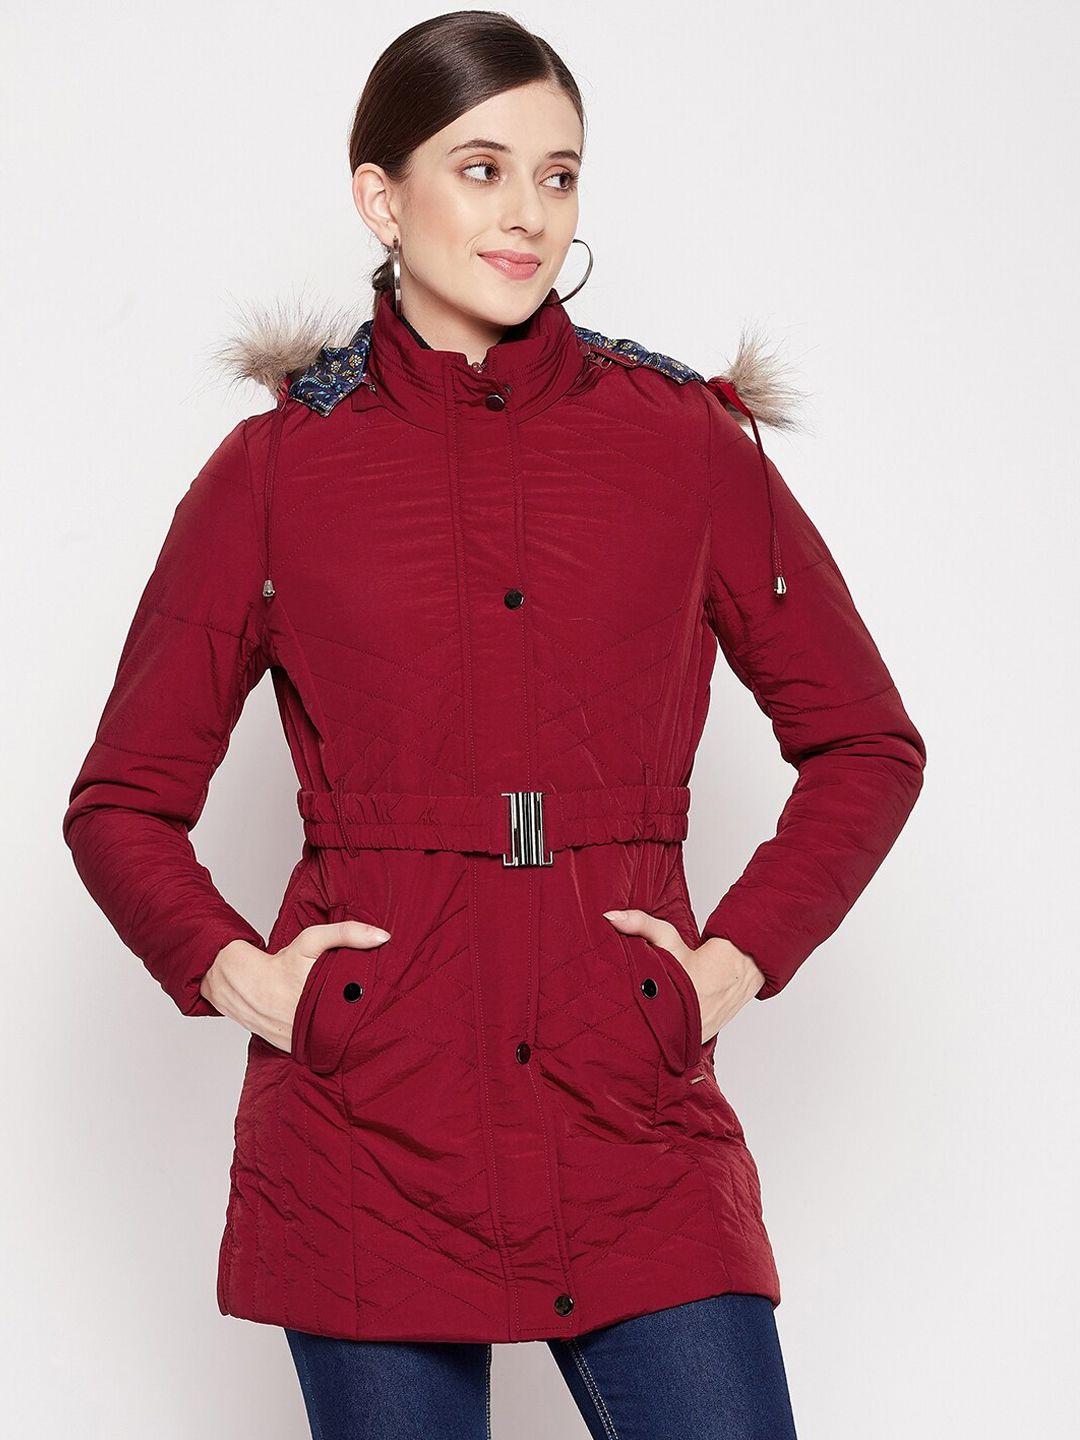 duke-women-maroon-longline-parka-jacket